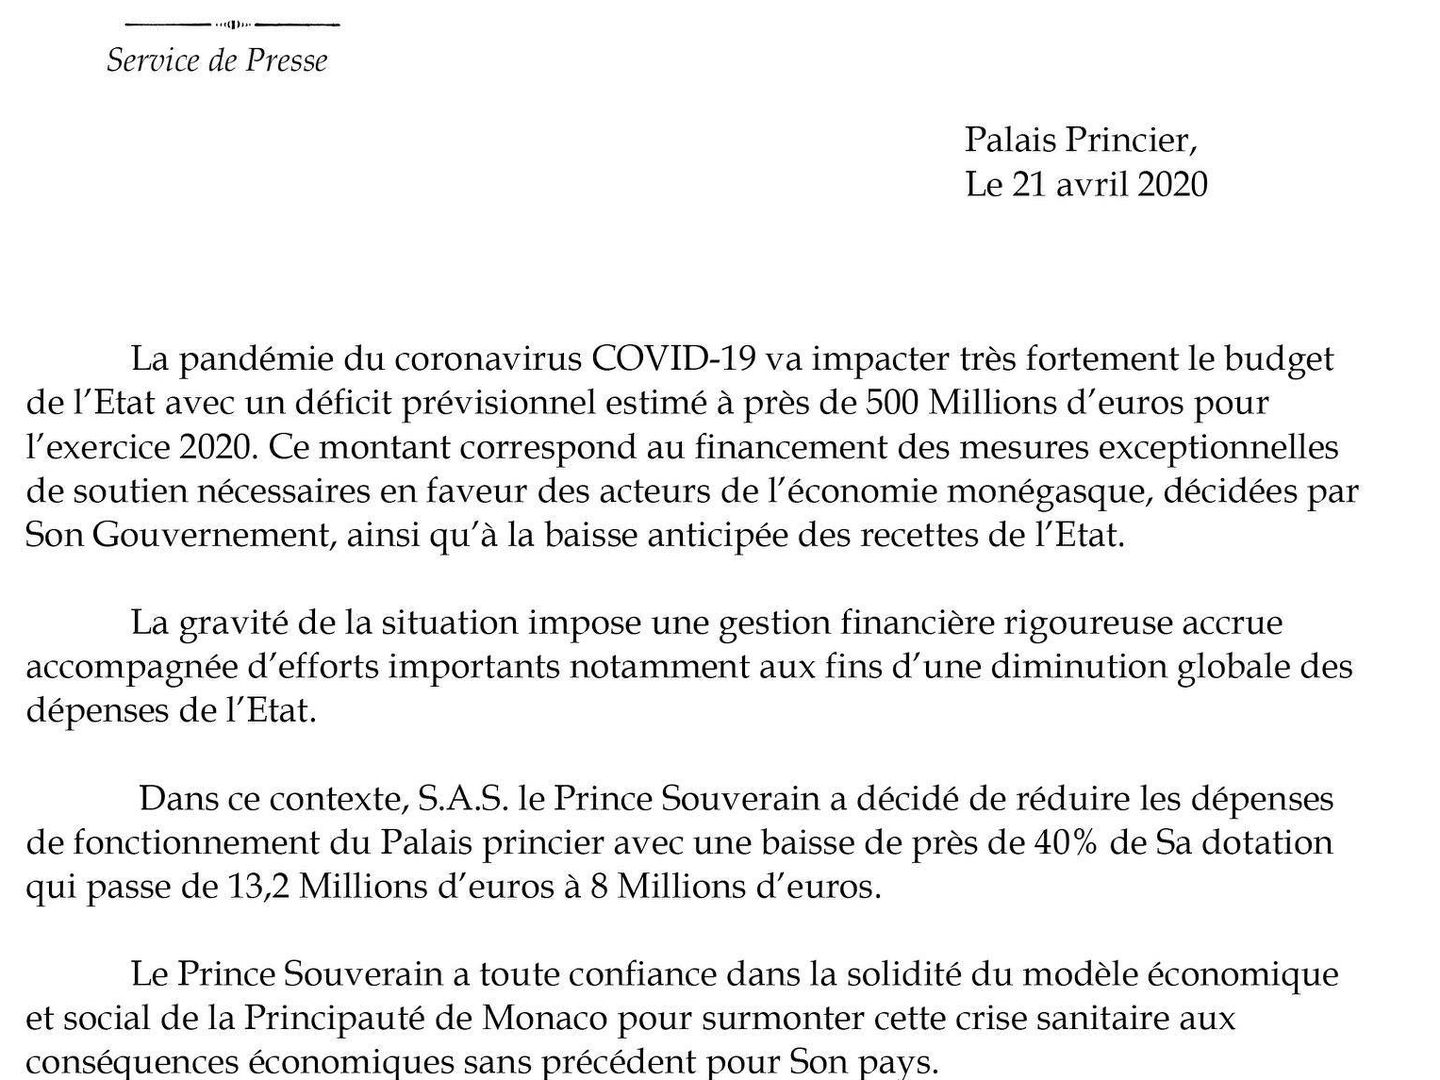 Comunicado emitido por el servicio de prensa del Principado de Mónaco. (Palais Princier)